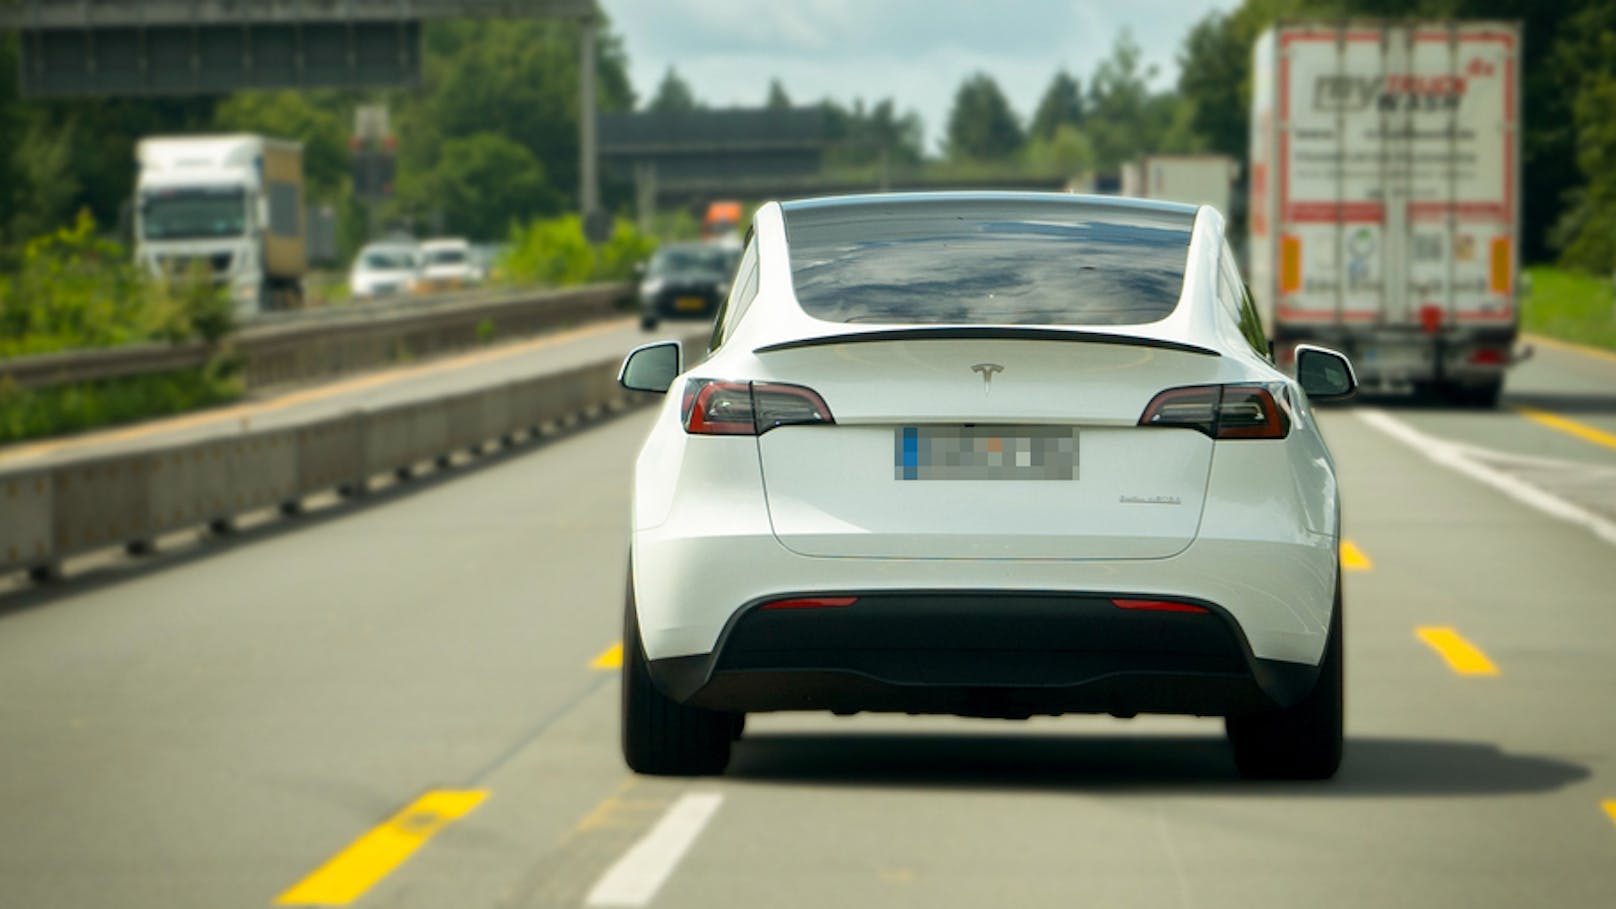 Teenie hackt Carsharing-Konto und flüchtet mit Tesla